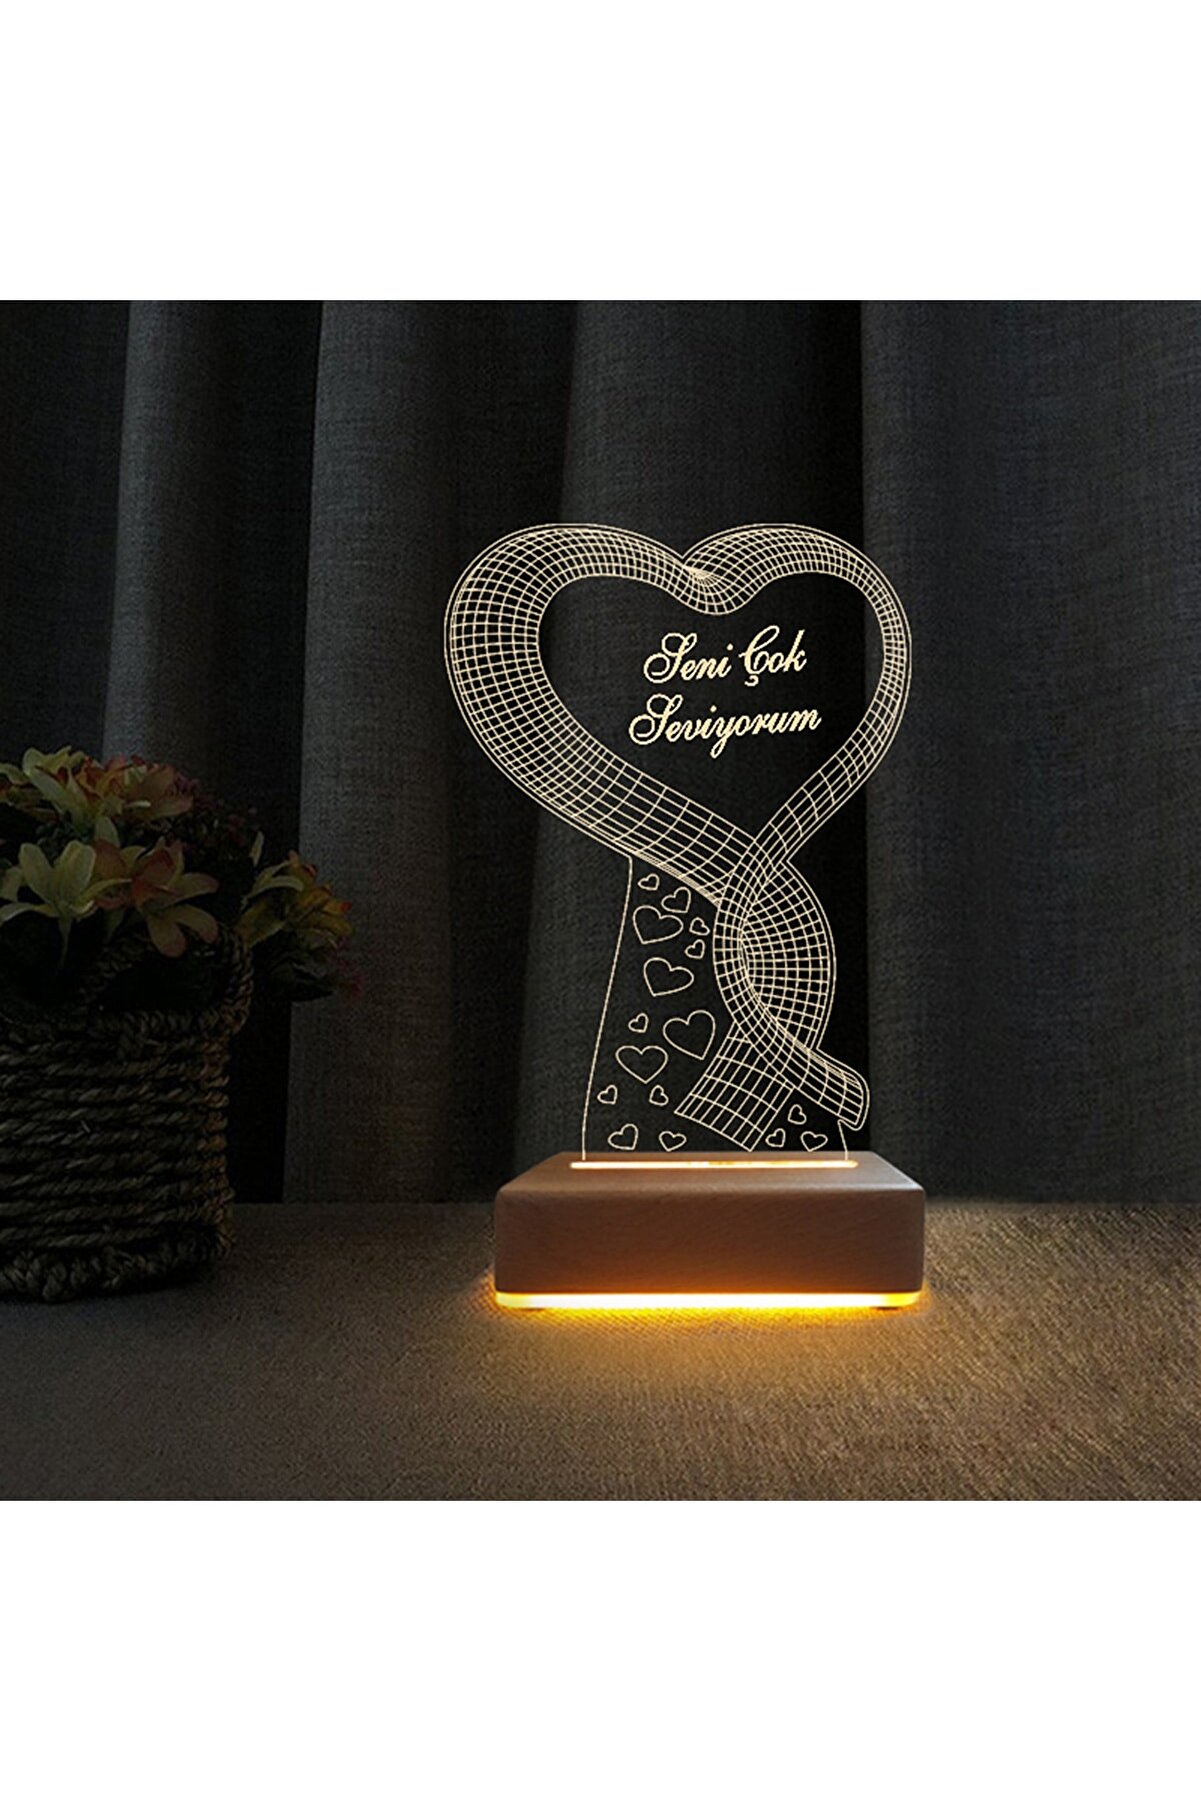 Vipyol Tek Kalp Gece Lambası Seni Seviyorum Yazılı Sevgili Hediyesi Lamba